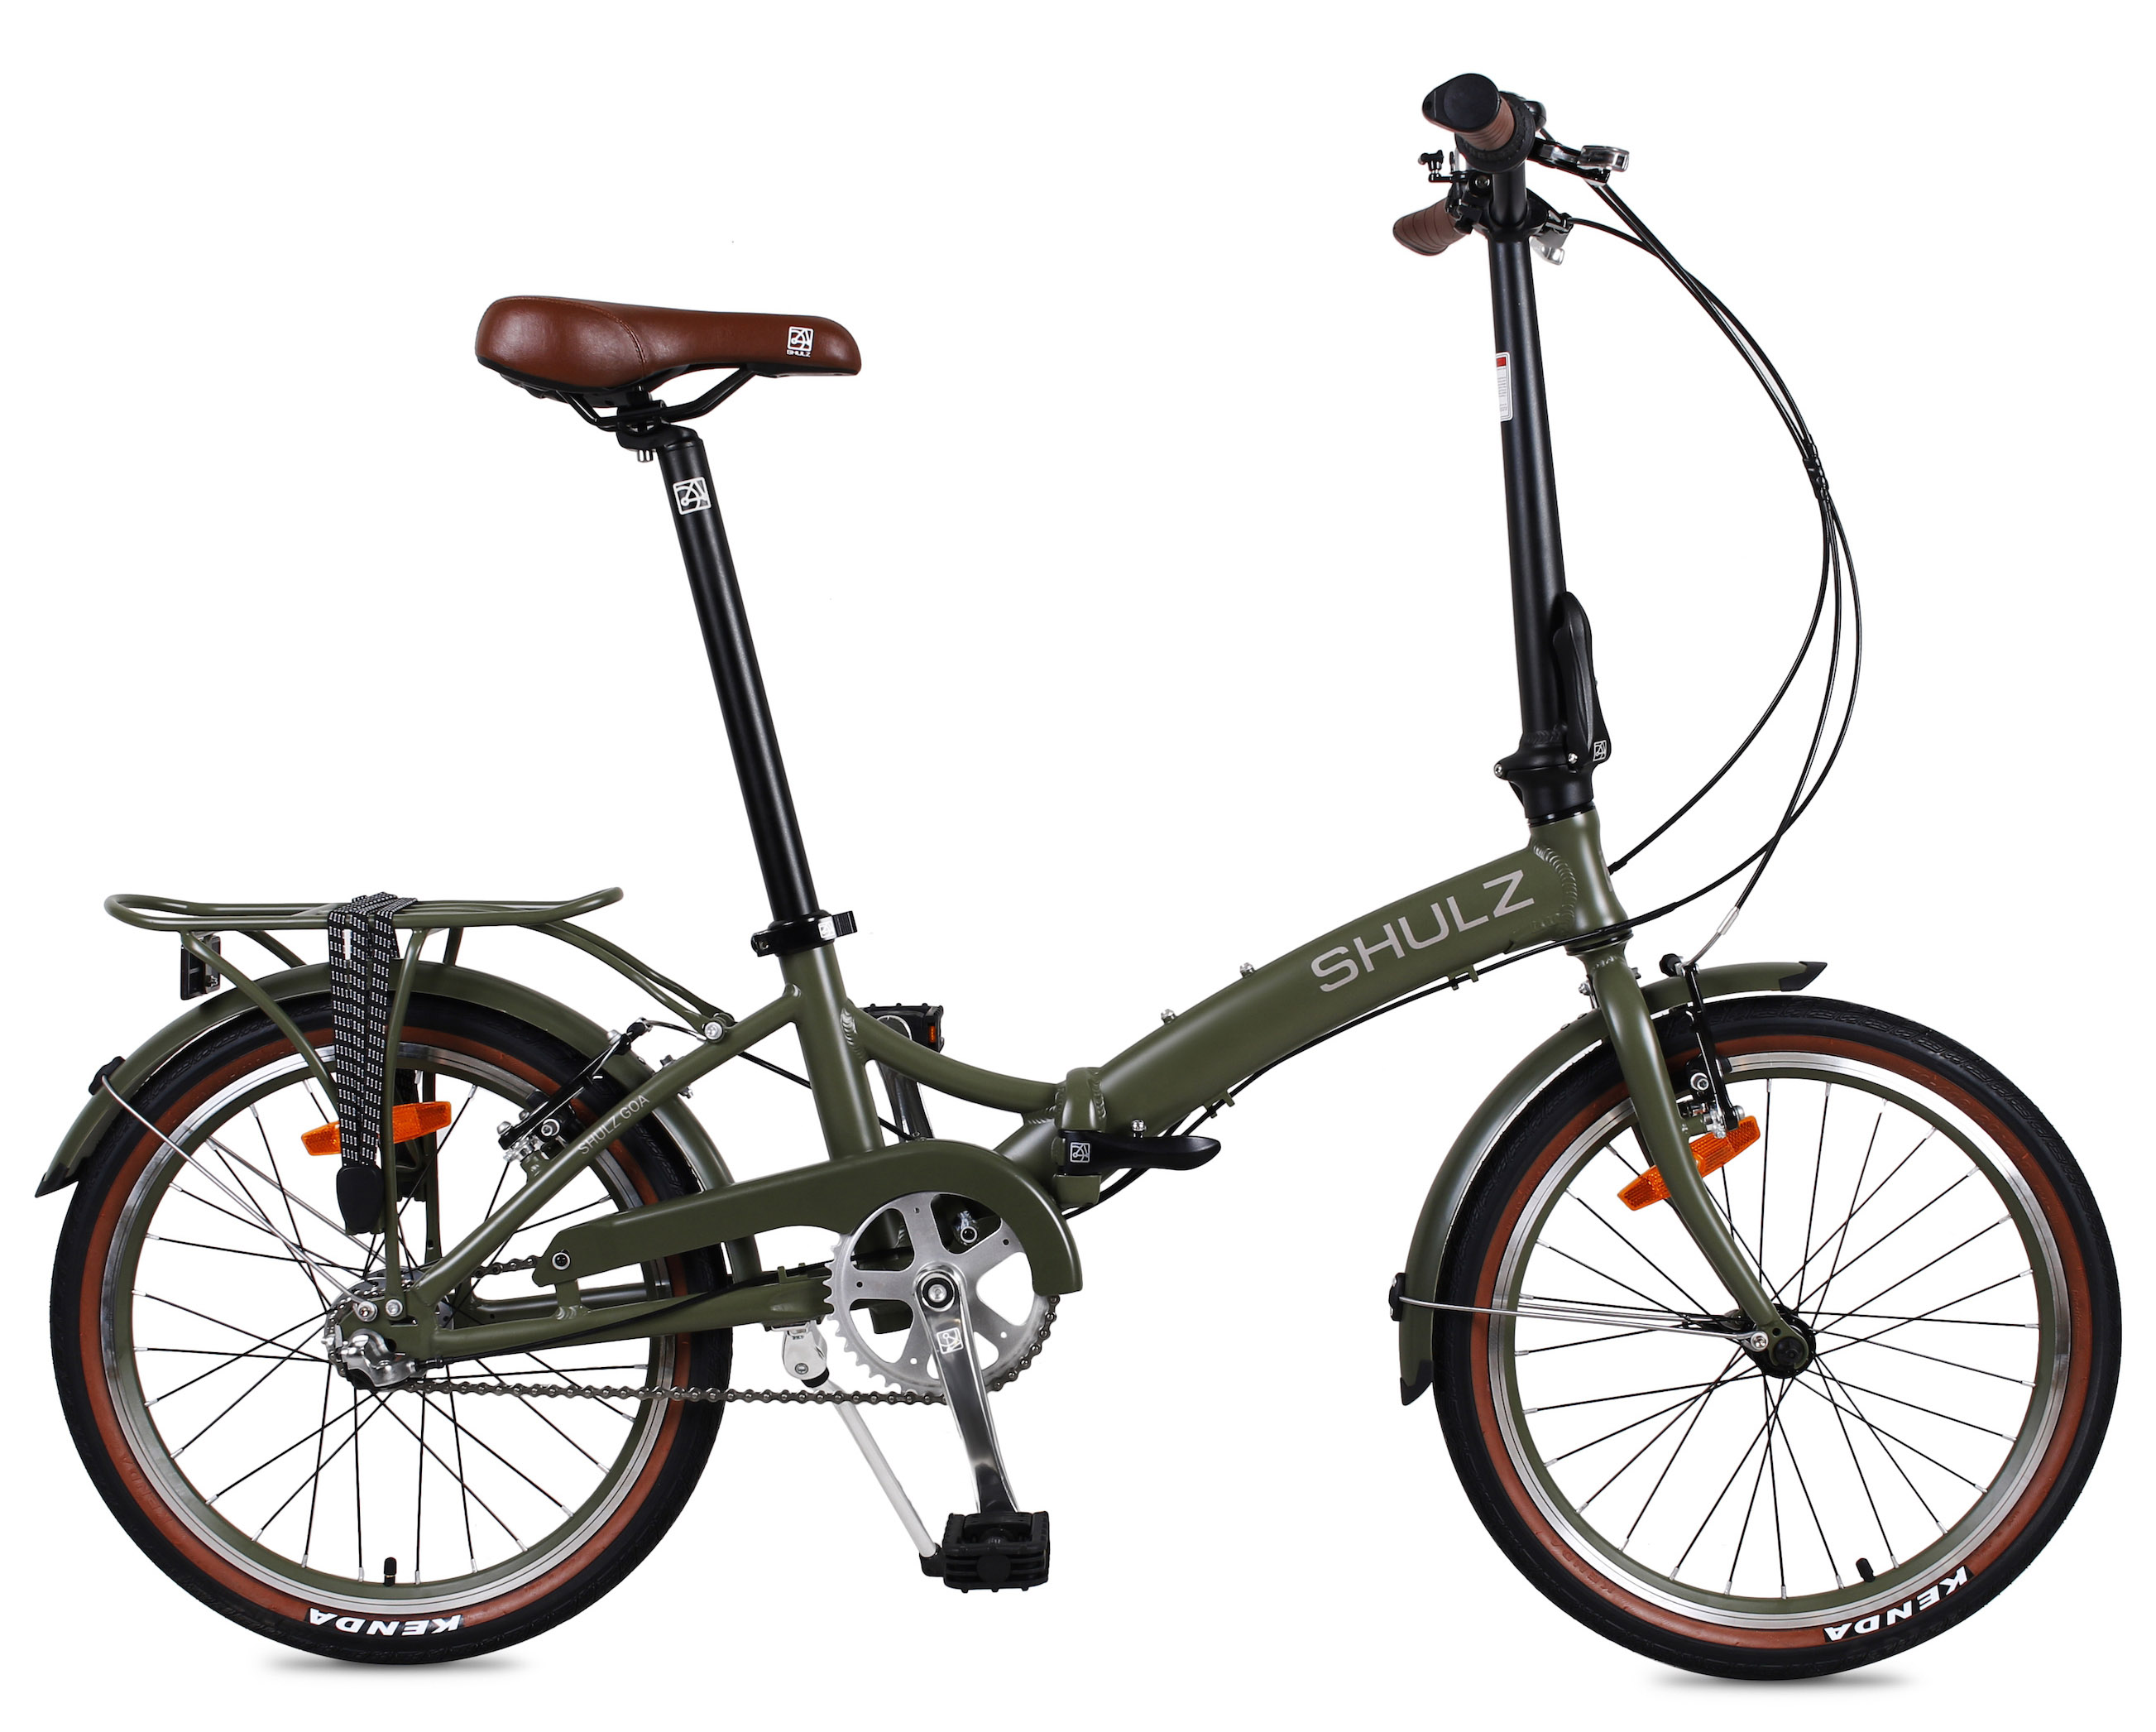  Отзывы о Складном велосипеде Shulz GOA V-brake 2020